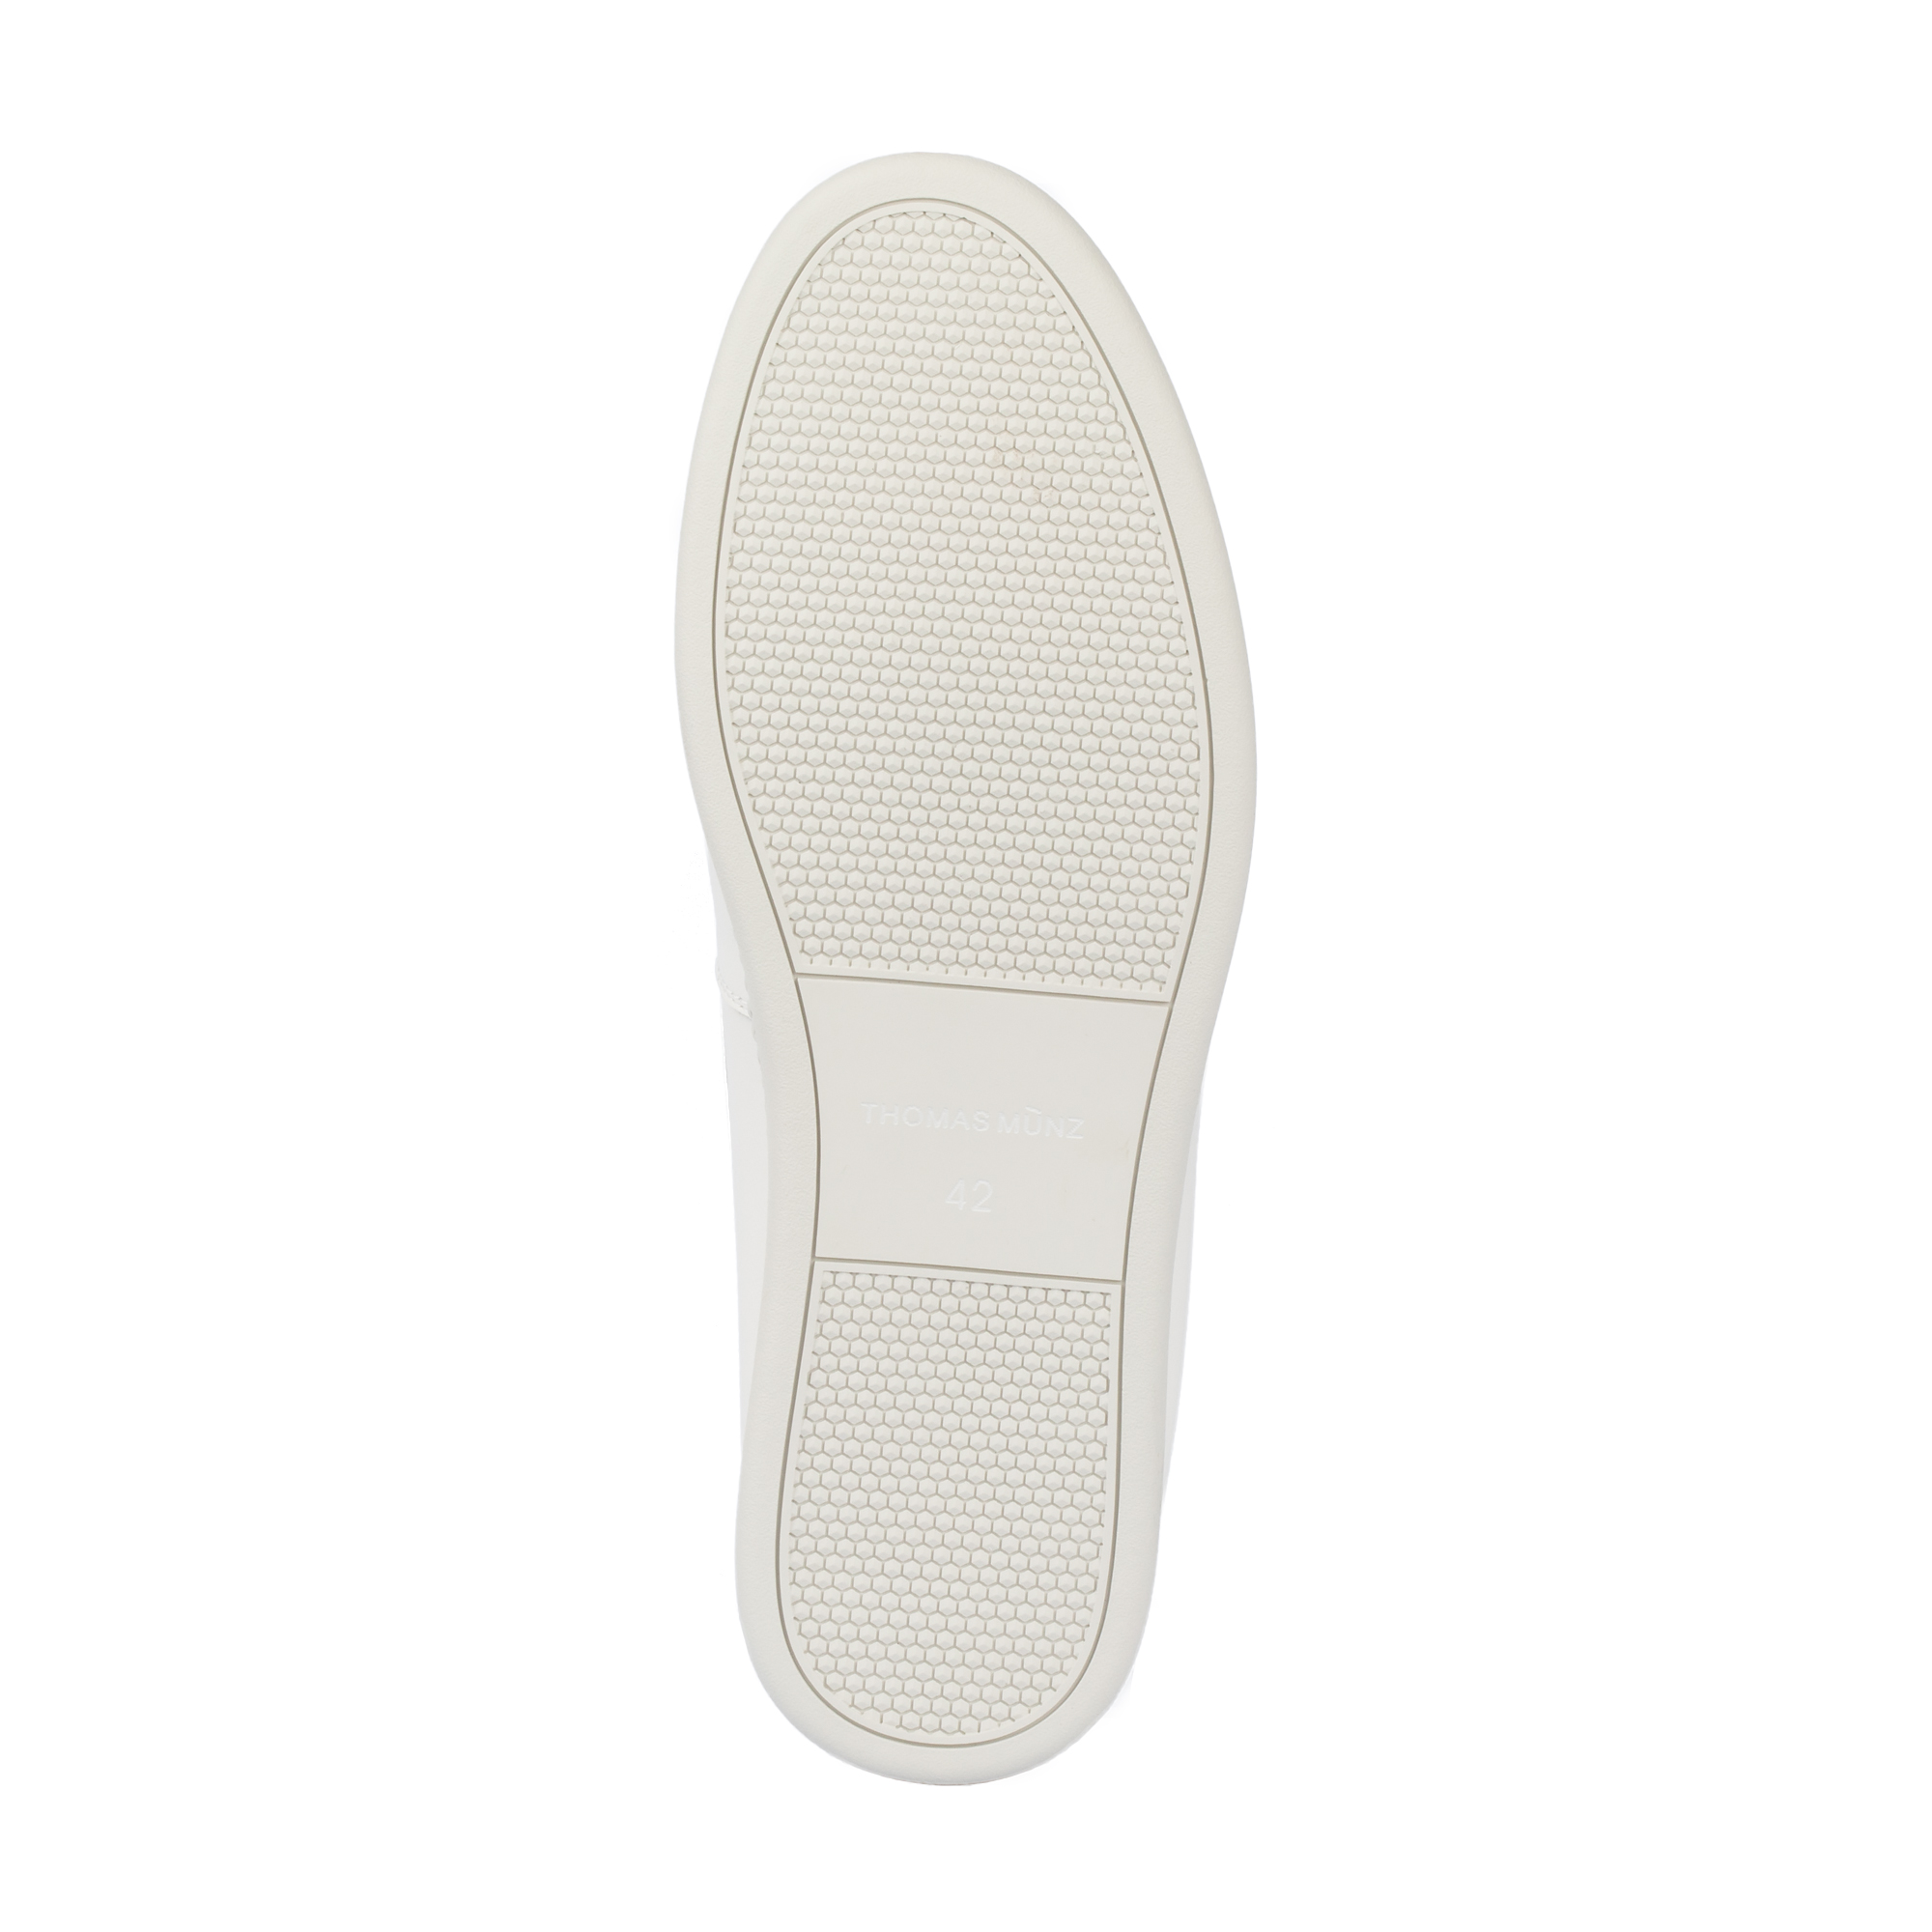 Туфли/полуботинки Thomas Munz 058-833B-1601, цвет белый, размер 41 - фото 4